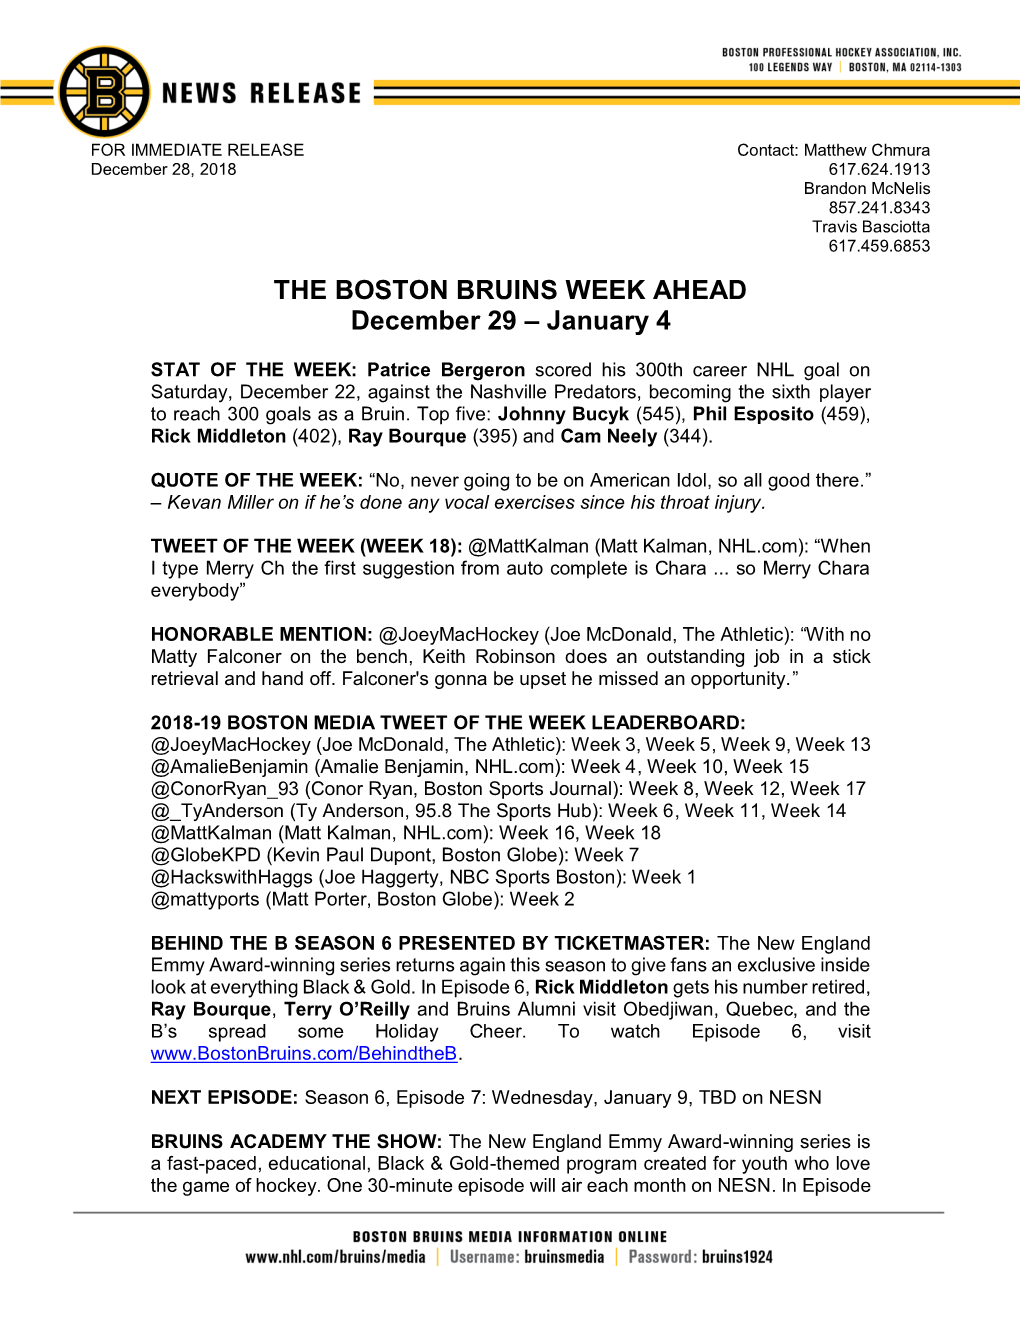 THE BOSTON BRUINS WEEK AHEAD December 29 – January 4